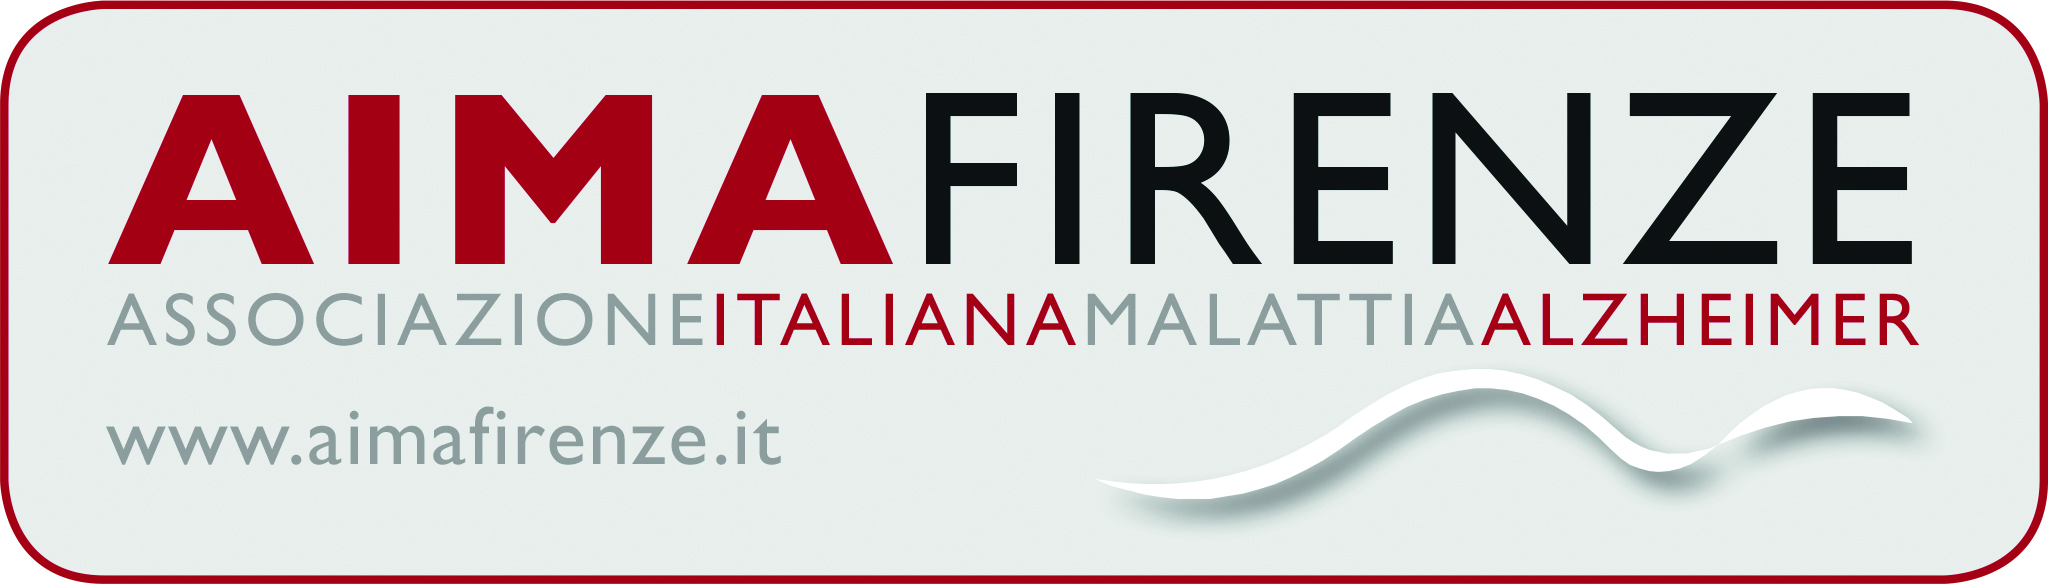 AIMA FIRENZE logo